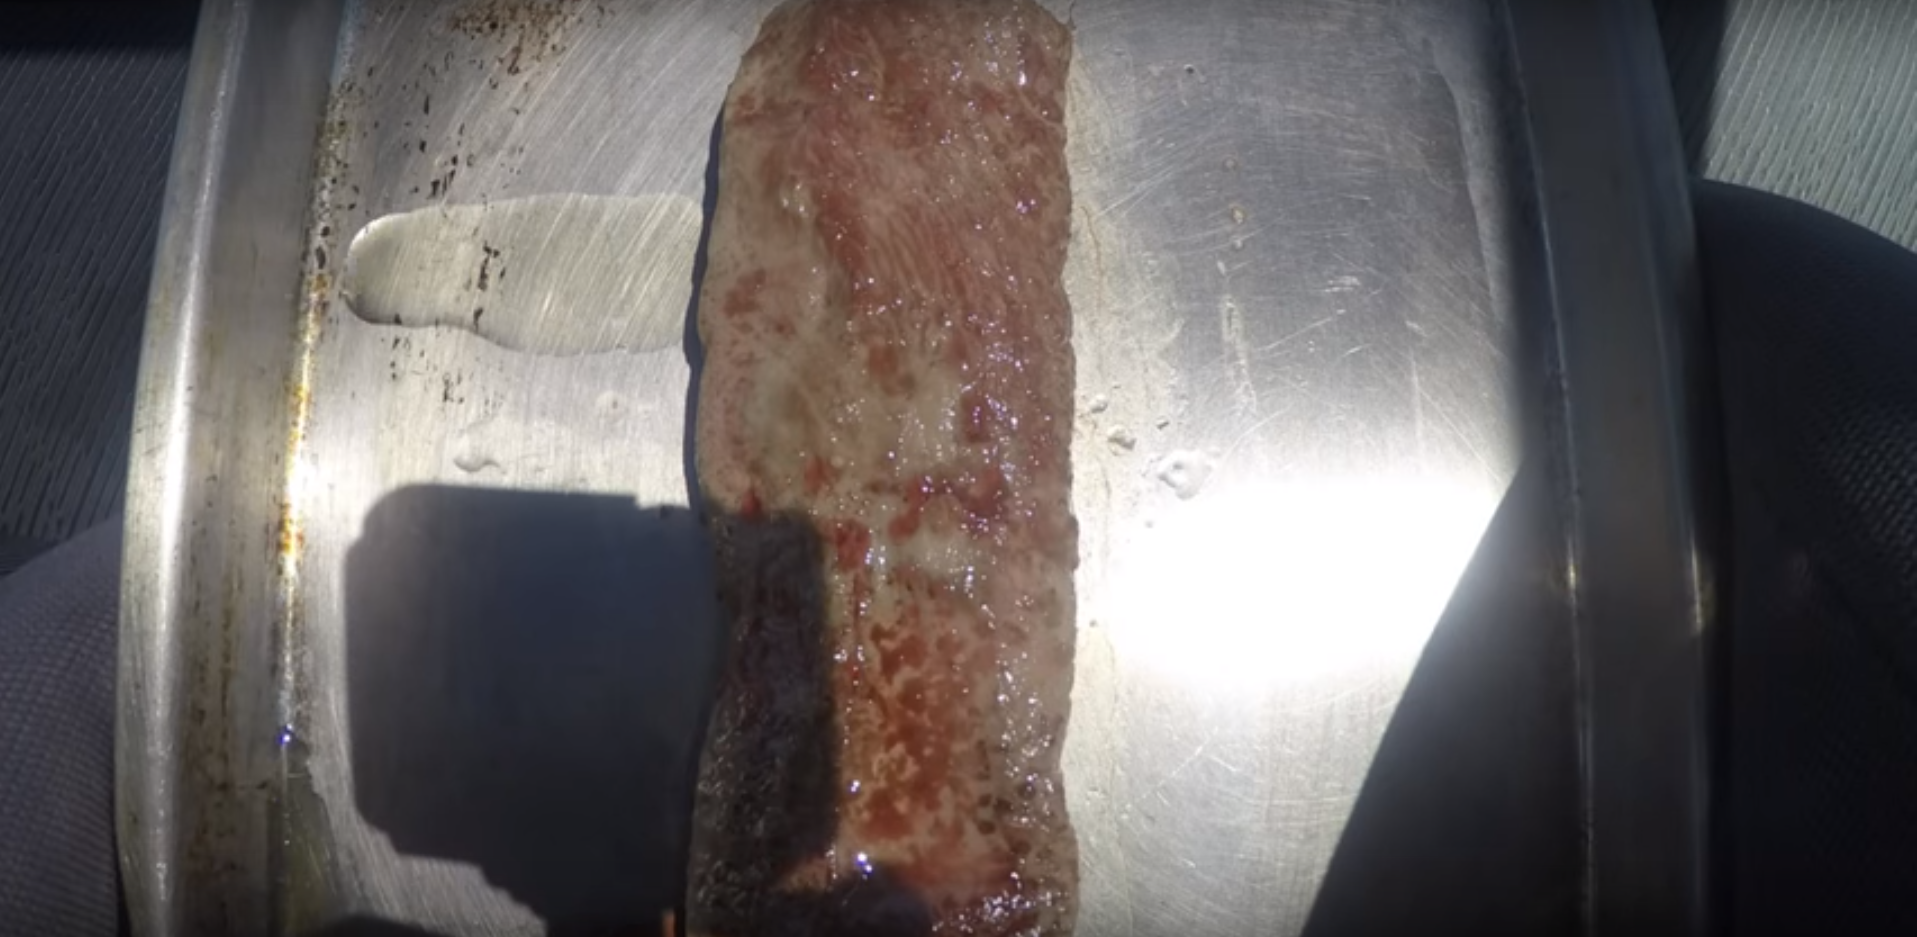 VIDEO: Šokējoši pamācoši! Šefpavārs izcep gaļu netradicionālā cepeškrāsnī … automašīnā!